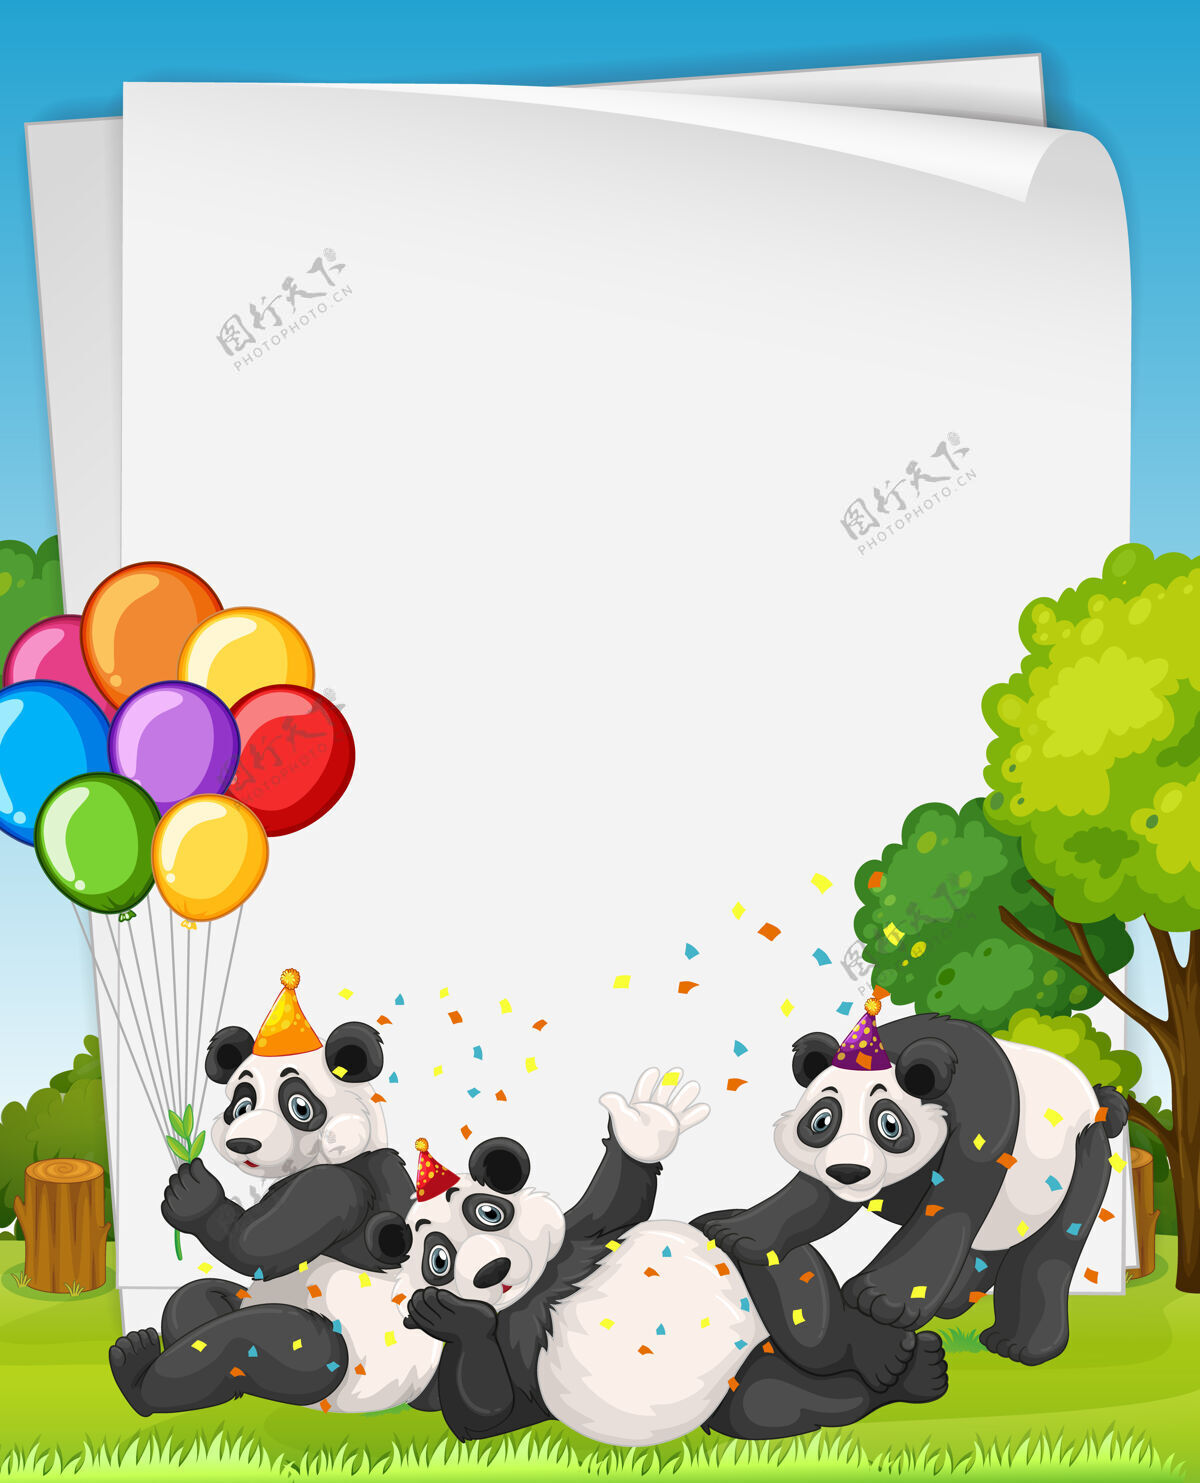 野生动物派对主题中有许多熊猫的空白横幅收藏页面笔记